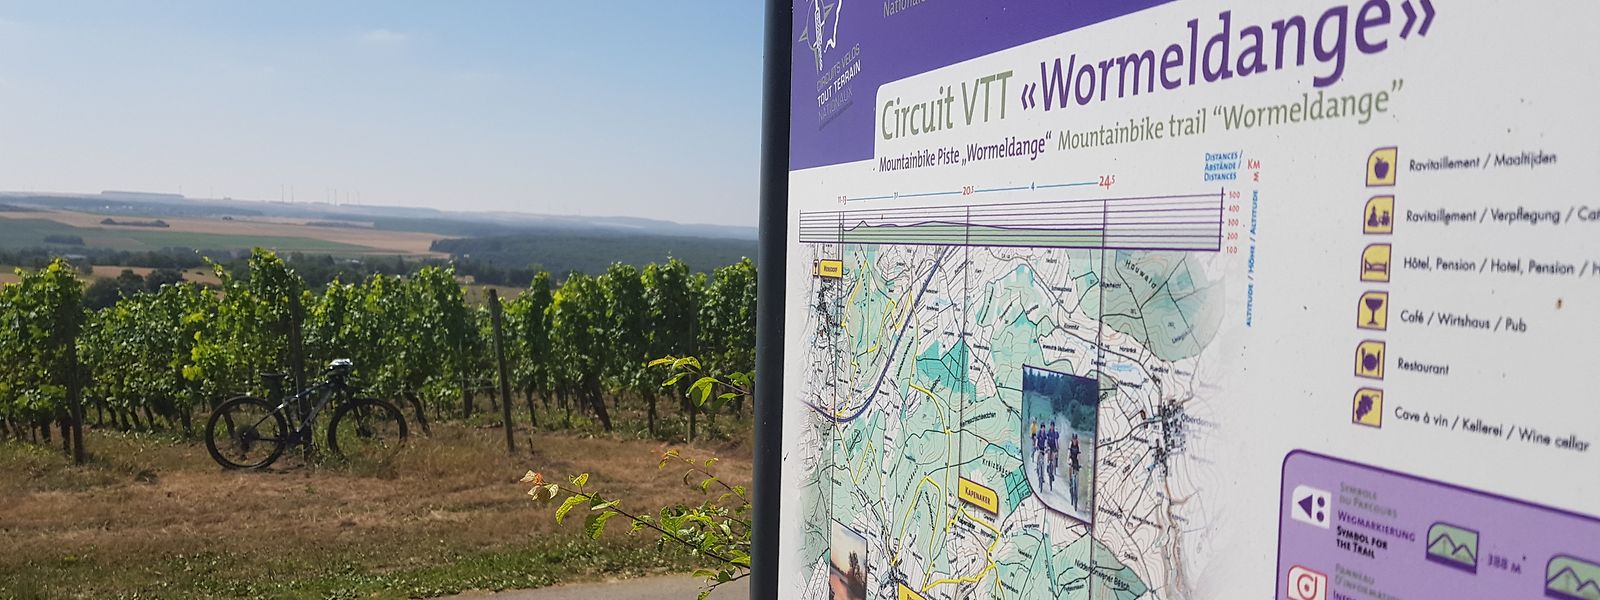 Le départ du circuit VTT se situe sur les hauteurs de Wormeldange.